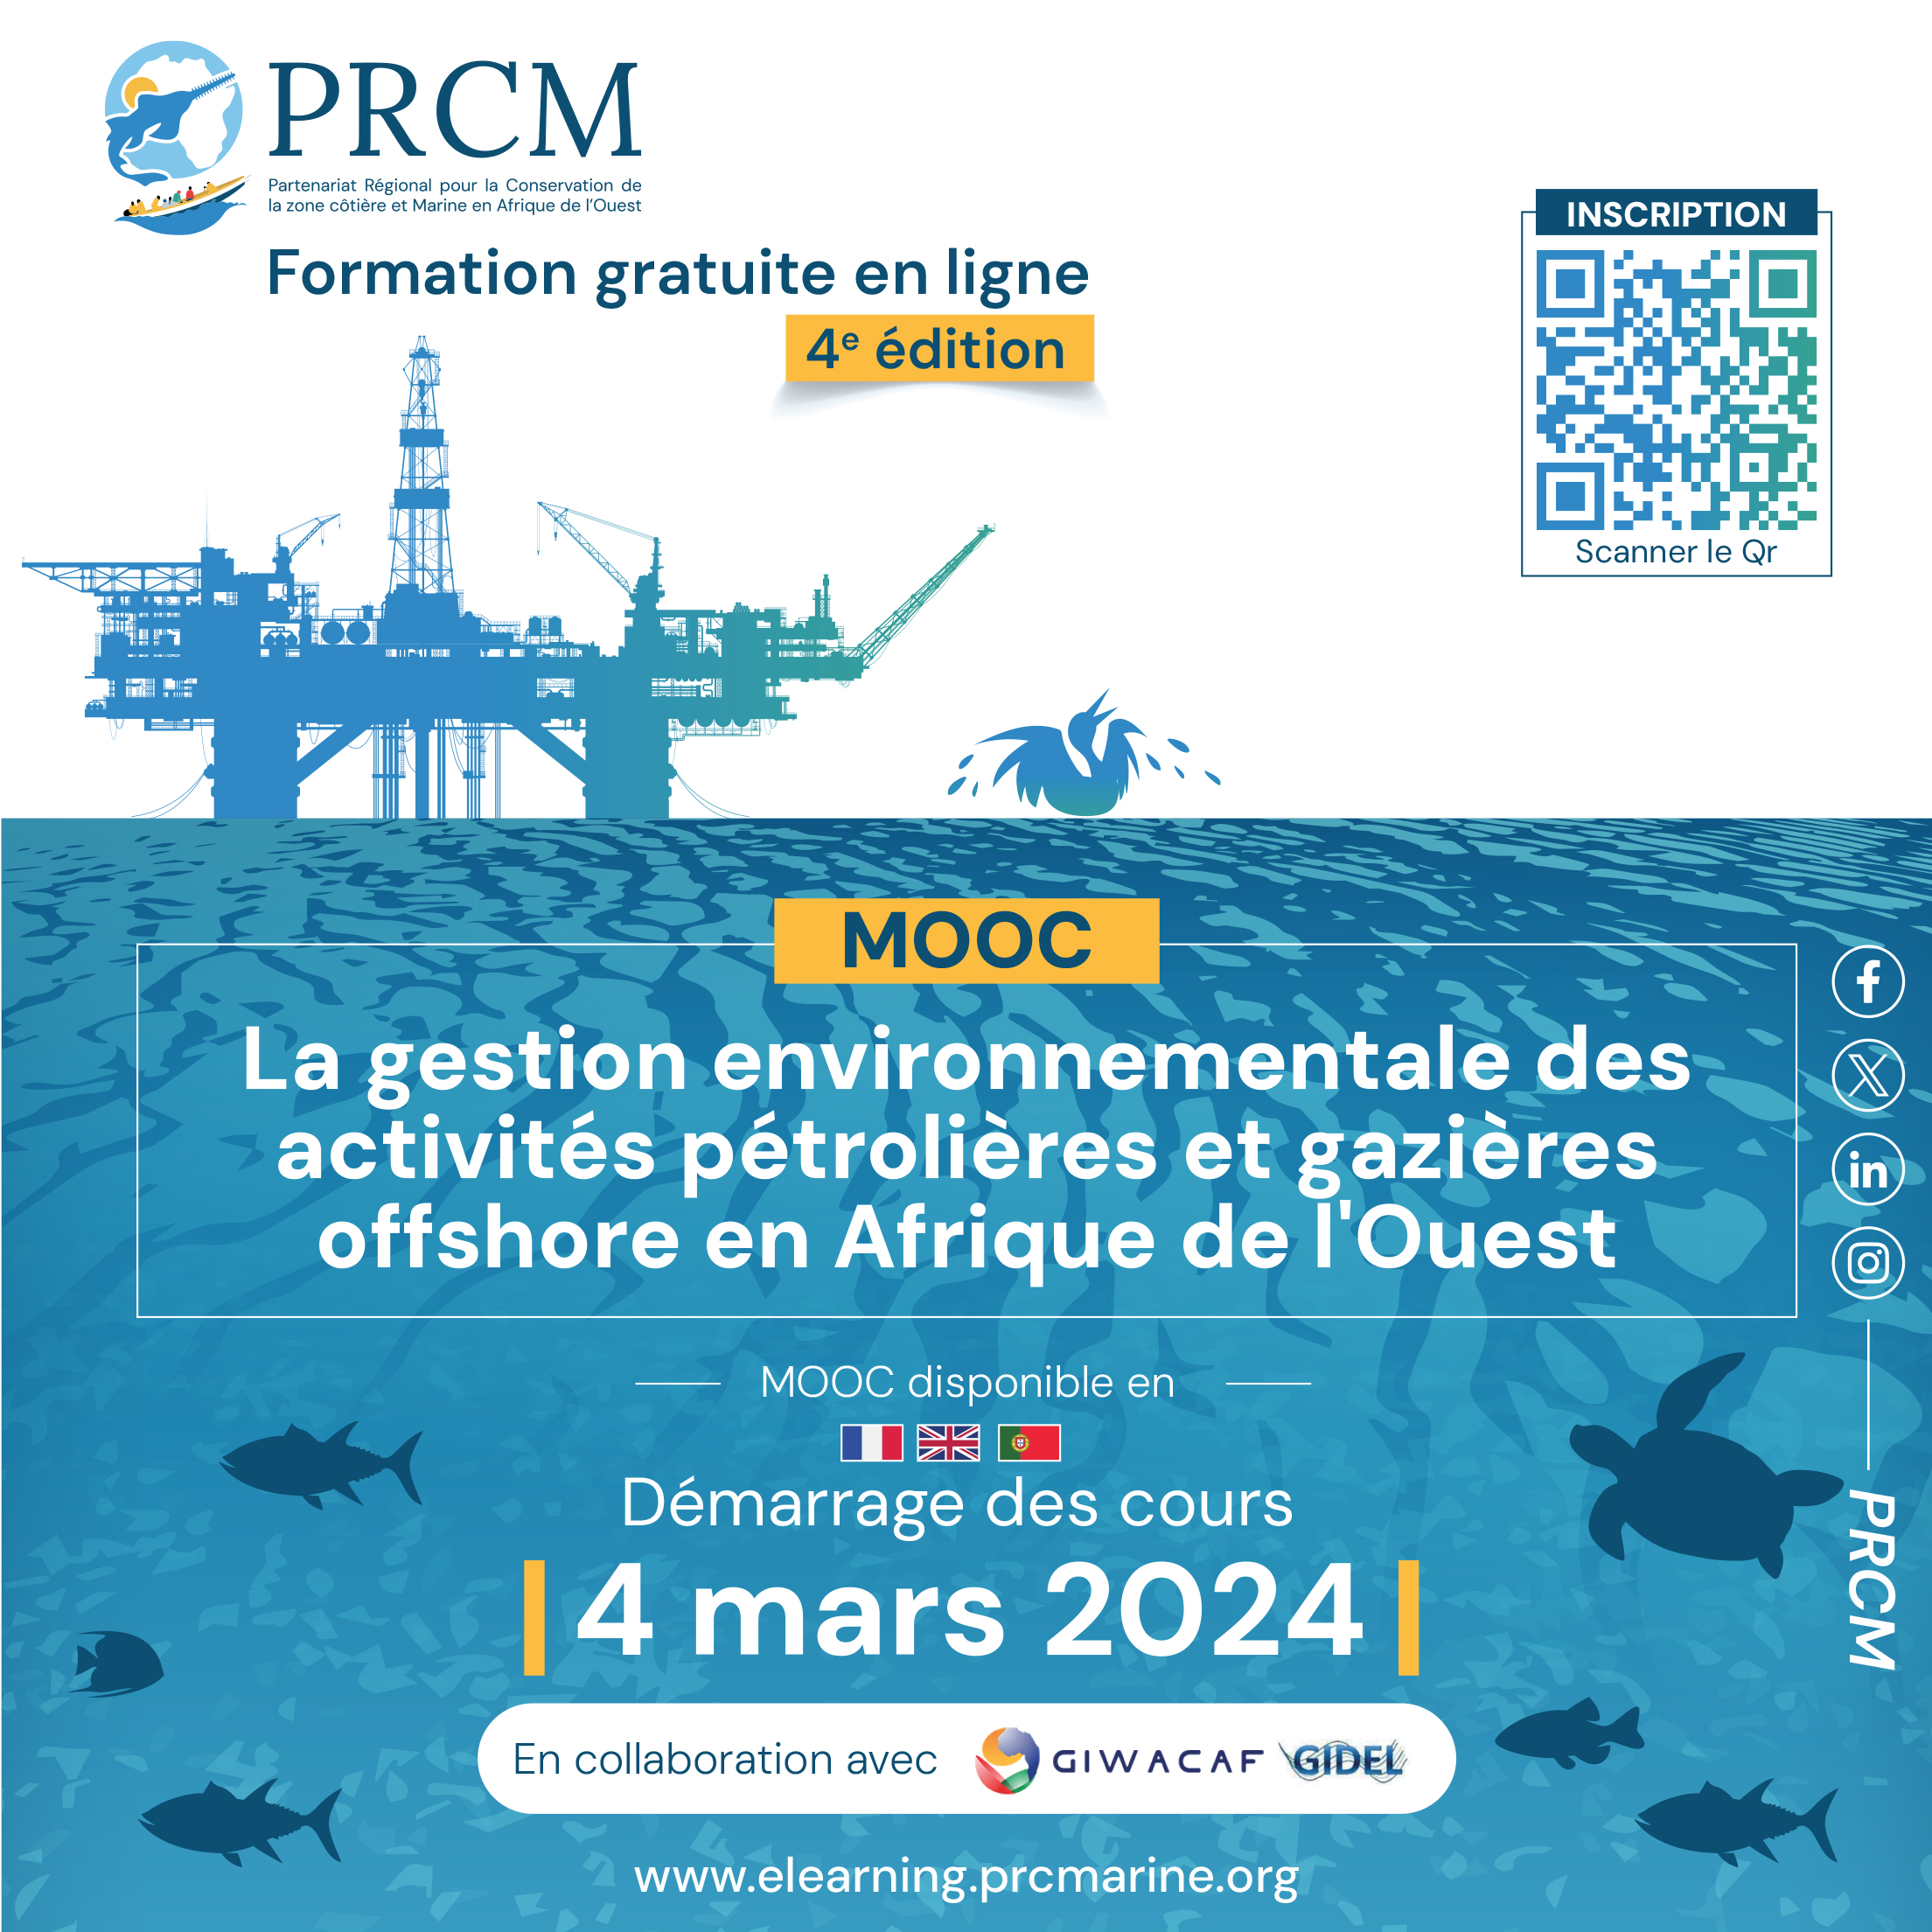 Lire la suite à propos de l’article Lancement de la 4ème édition du MOOC sur la gestion environnementale des activités pétrolières et gazières offshore en Afrique de l’Ouest.